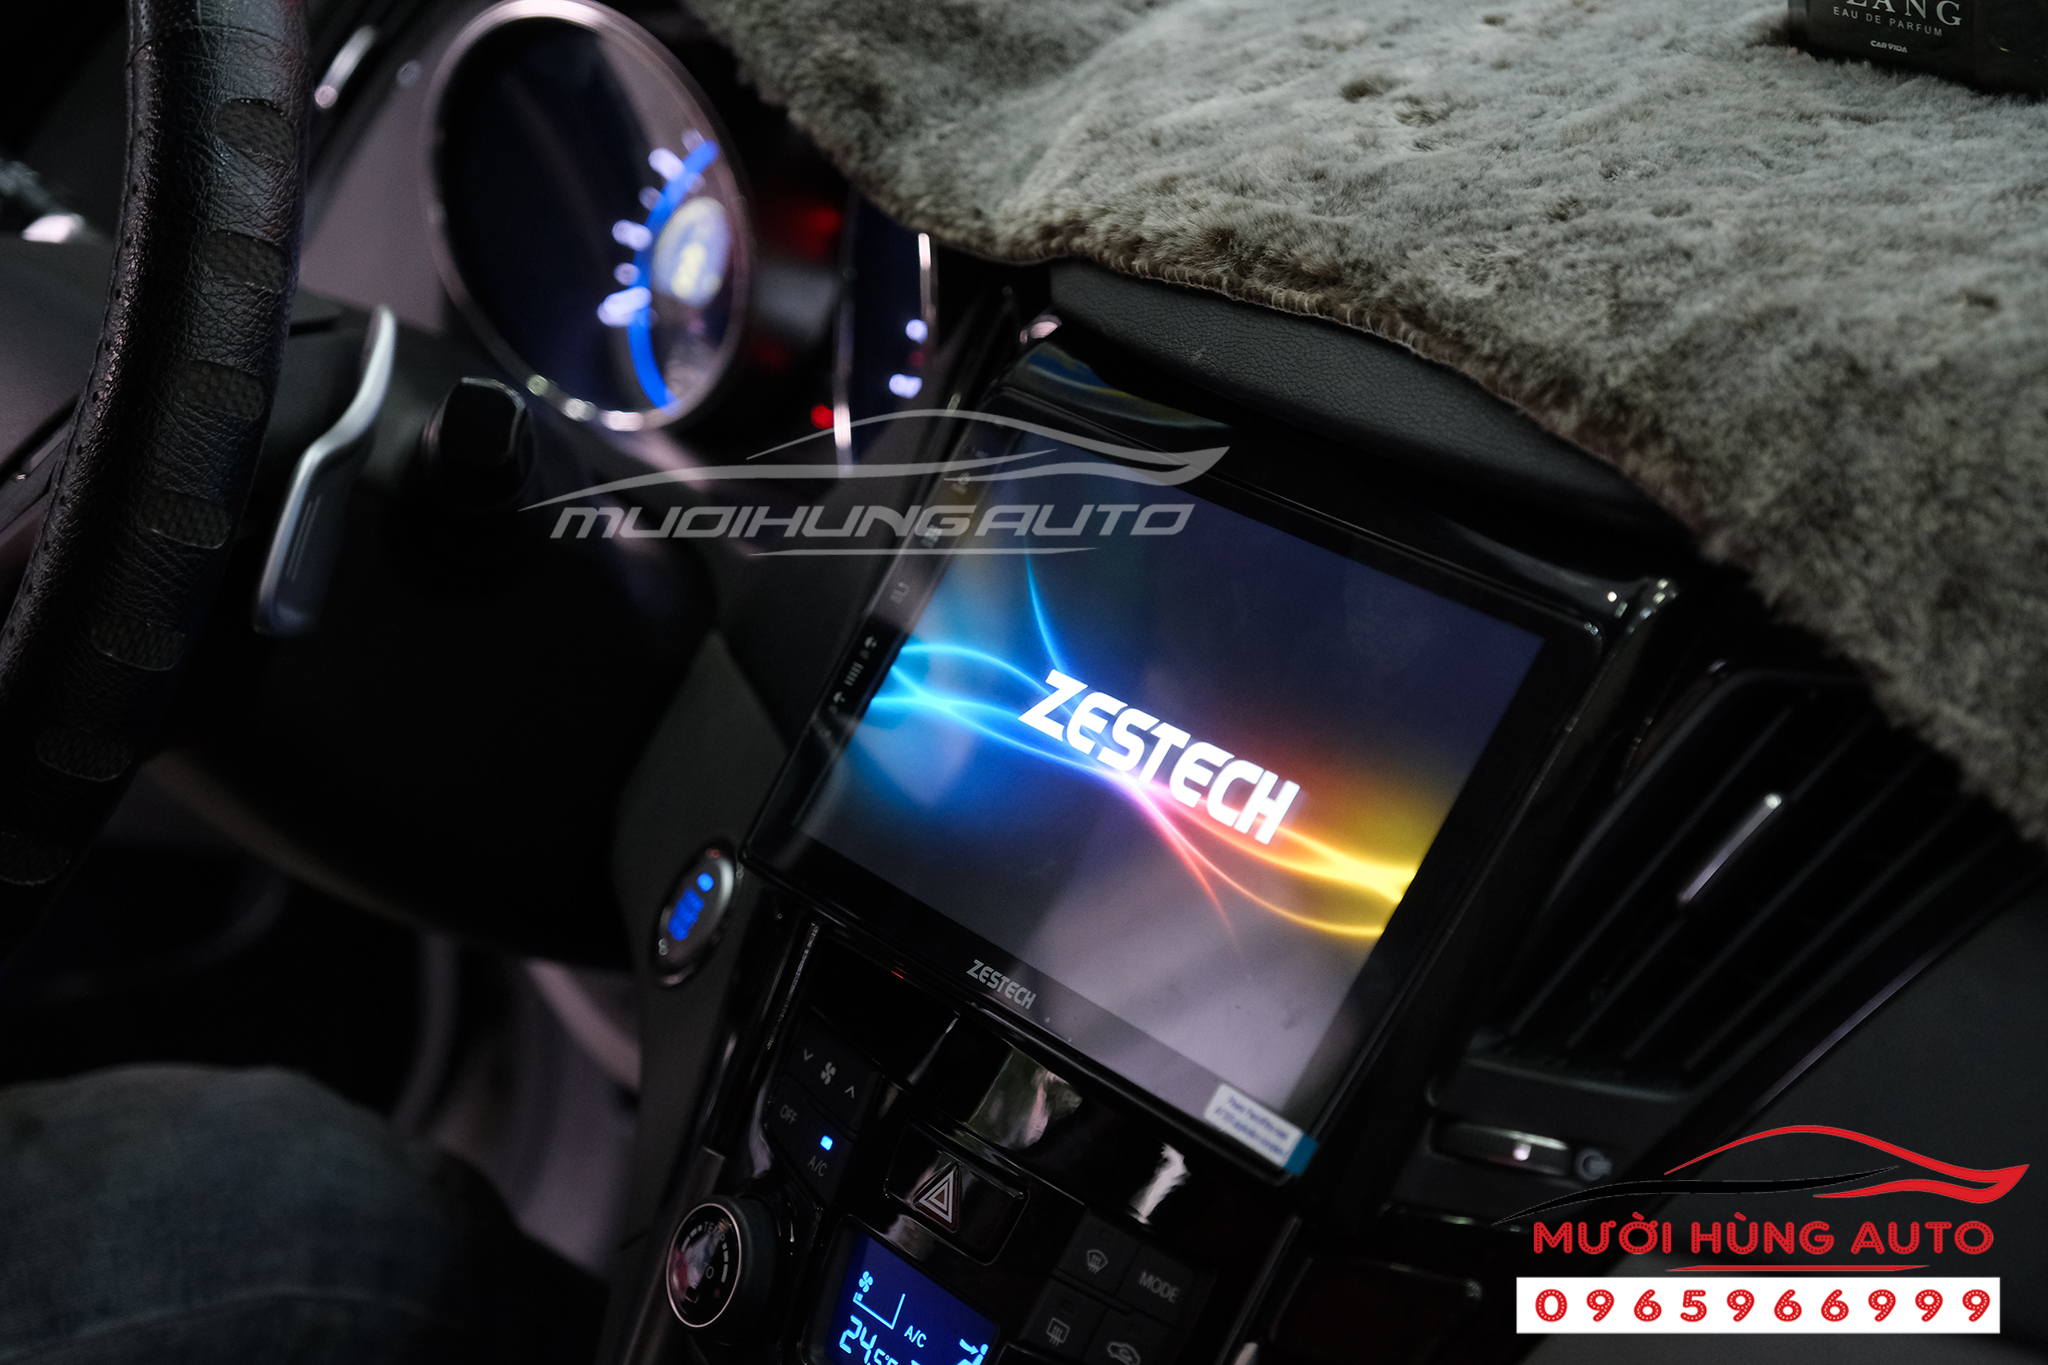 dvd Android Zestech Z800 Pro xe Hyundai Sonata